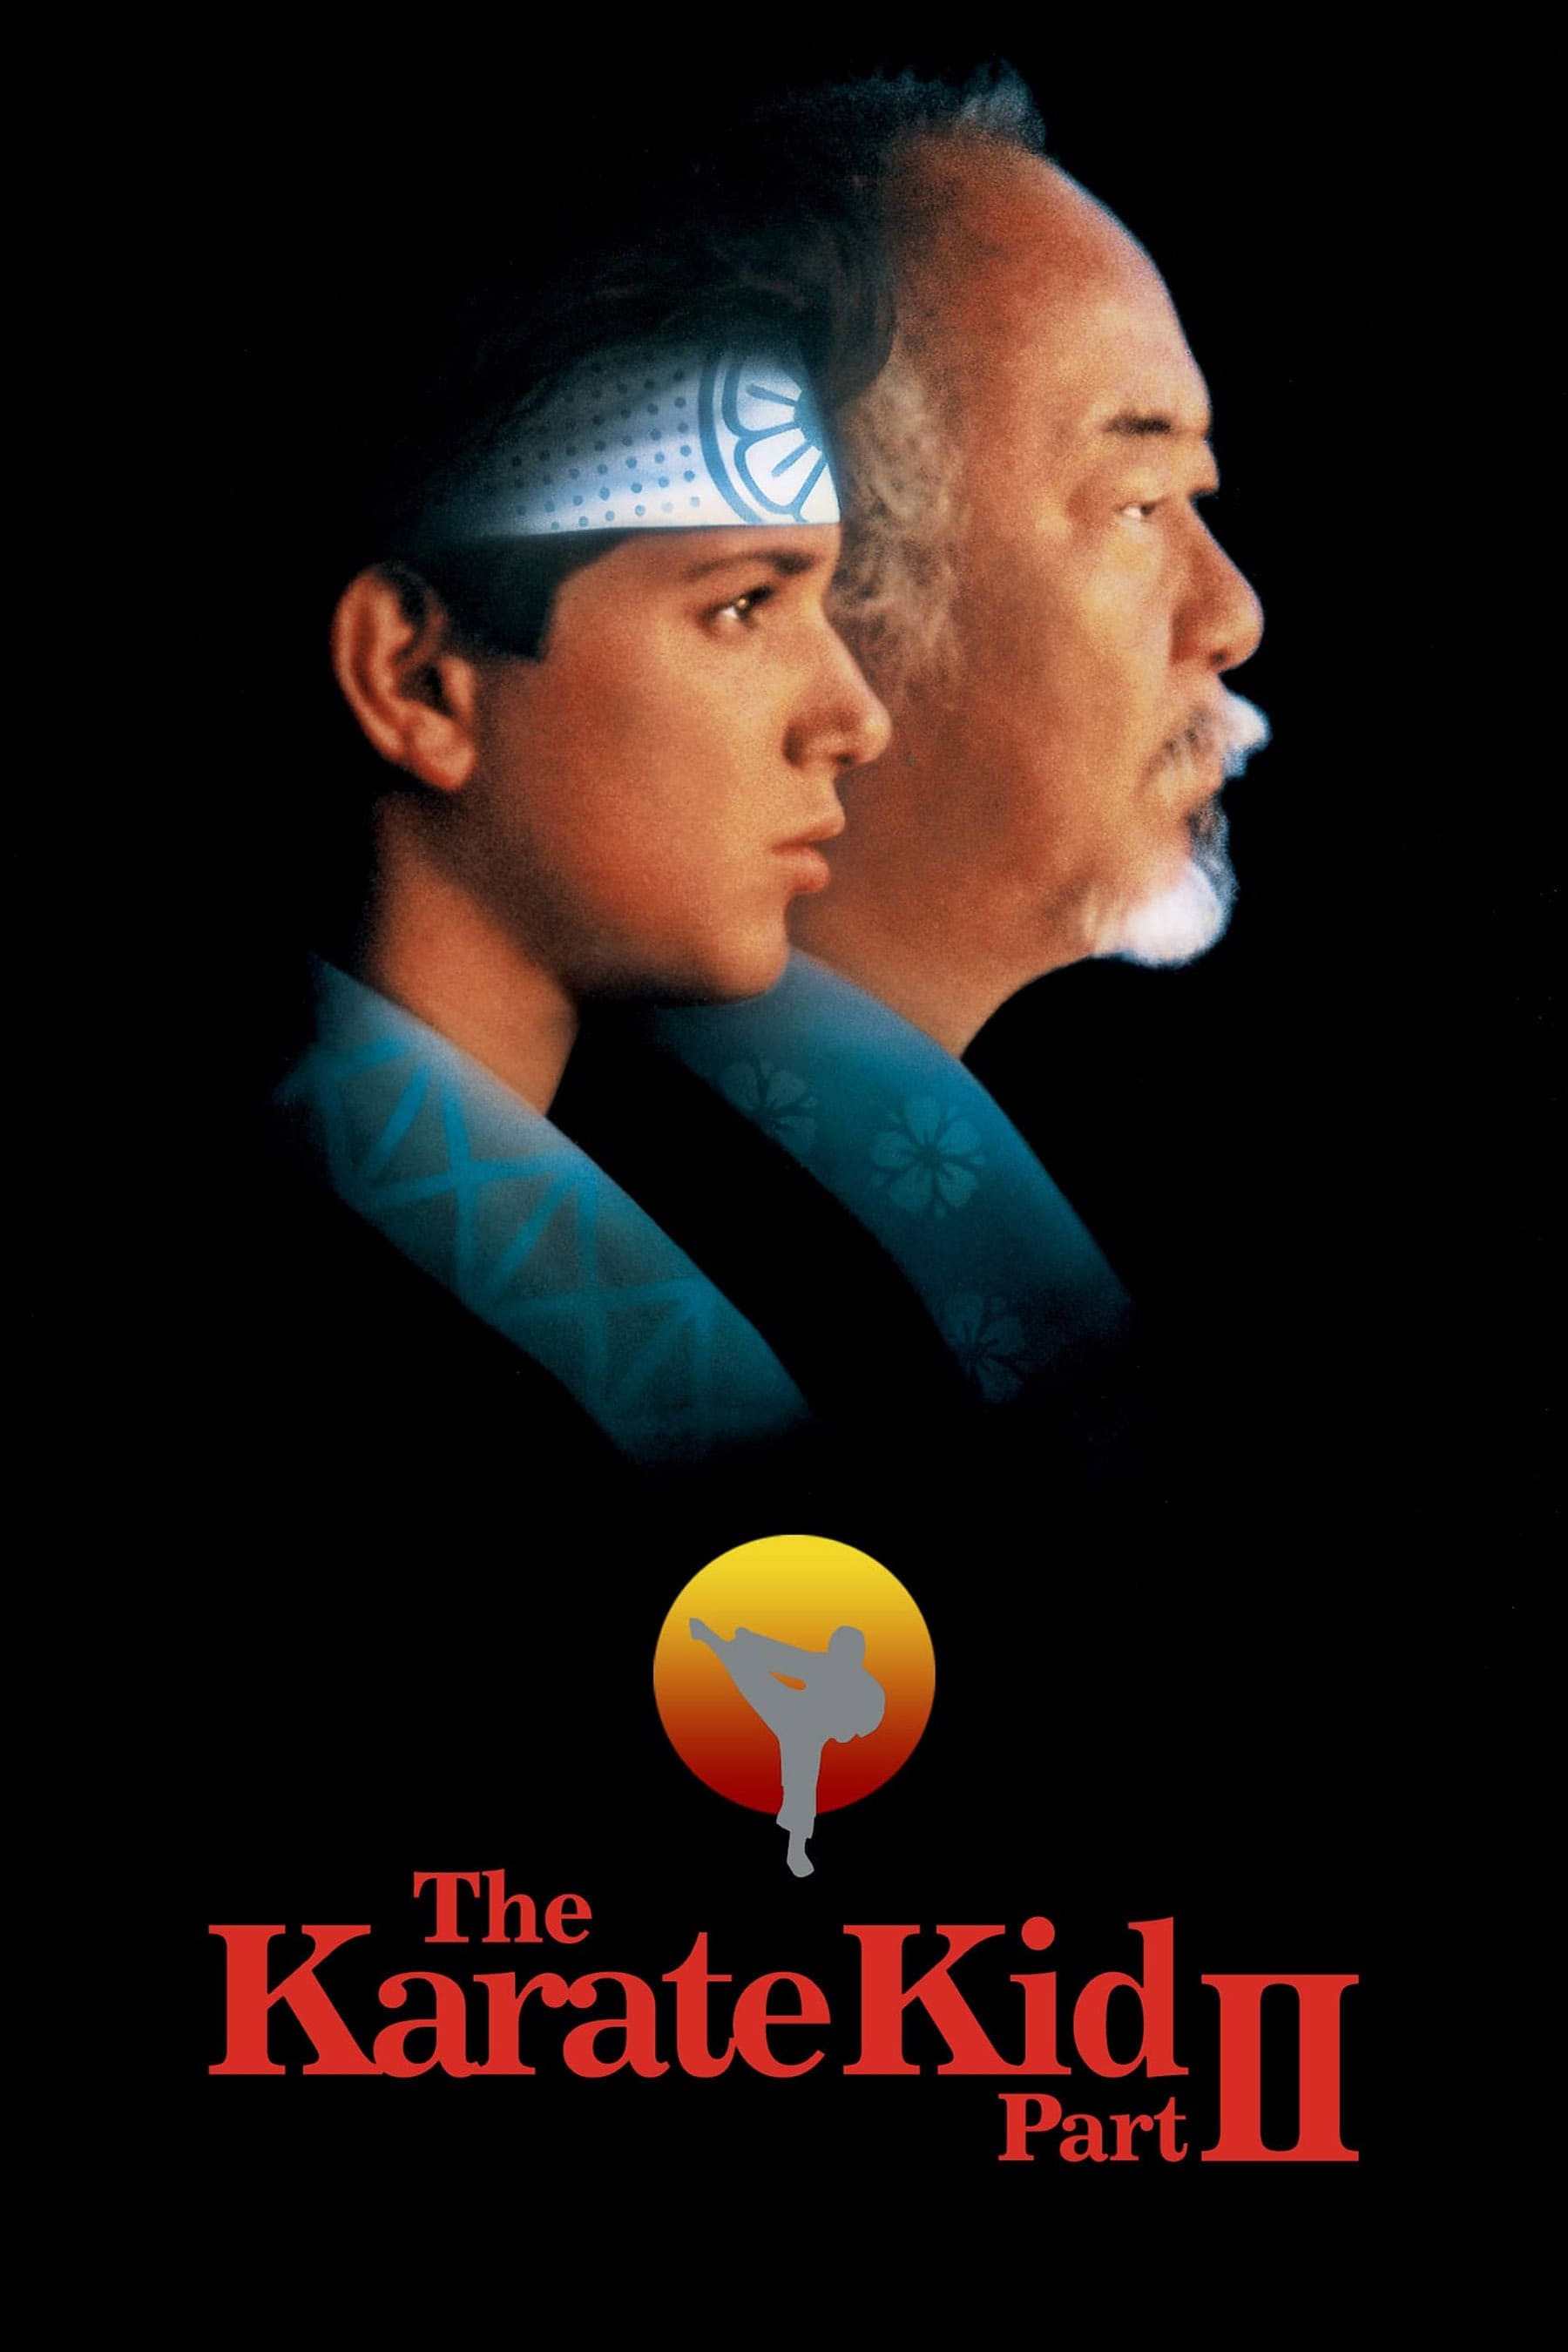 Karate Kid II: La Historia Continúa